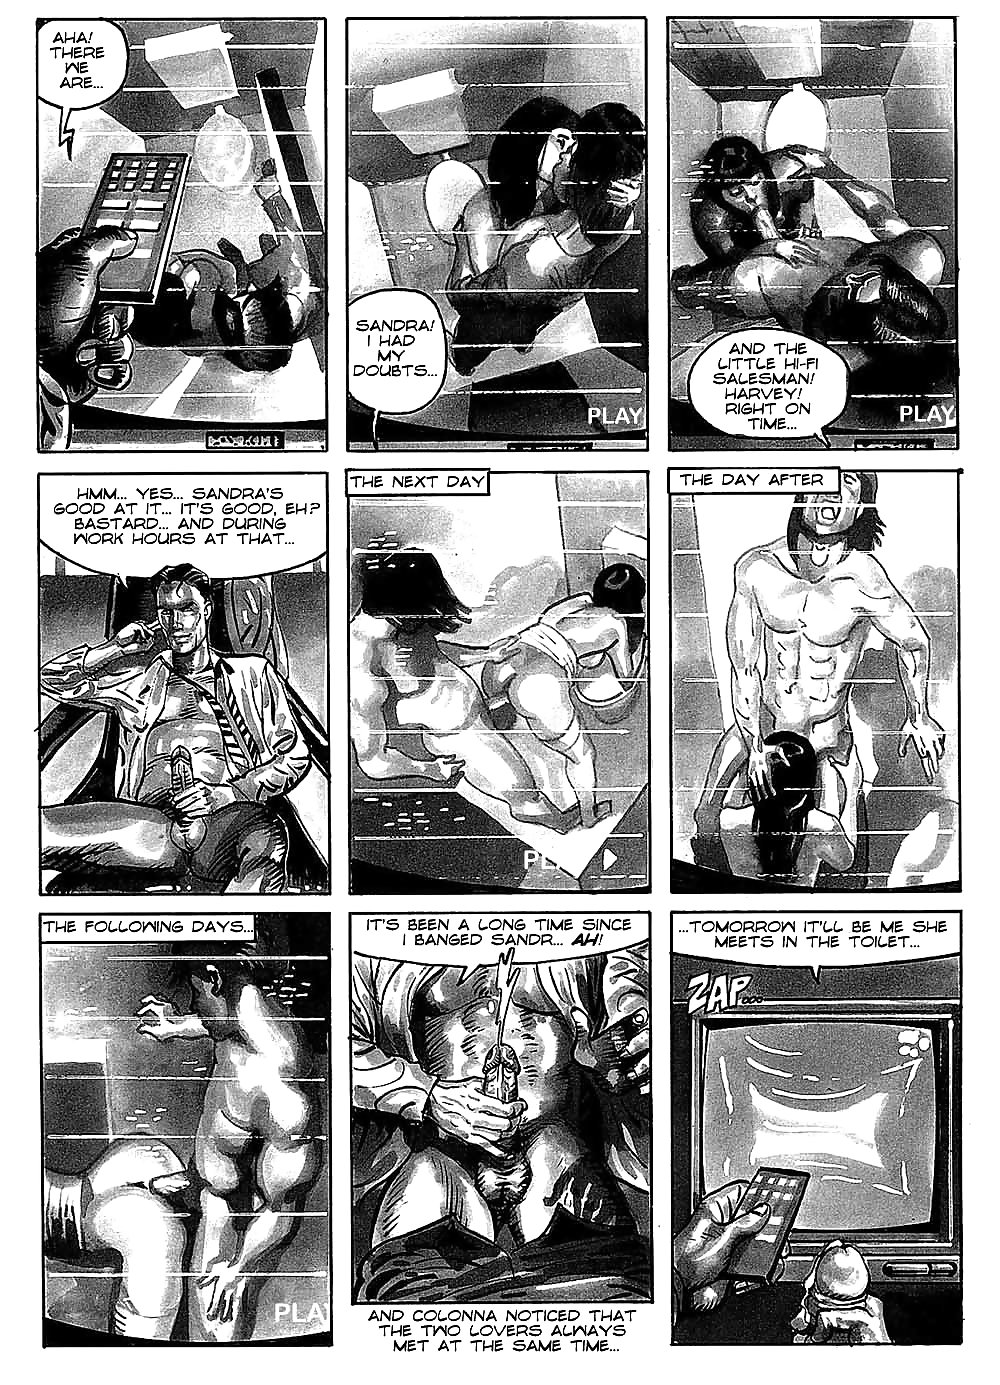 Hot comics 52 #19539689